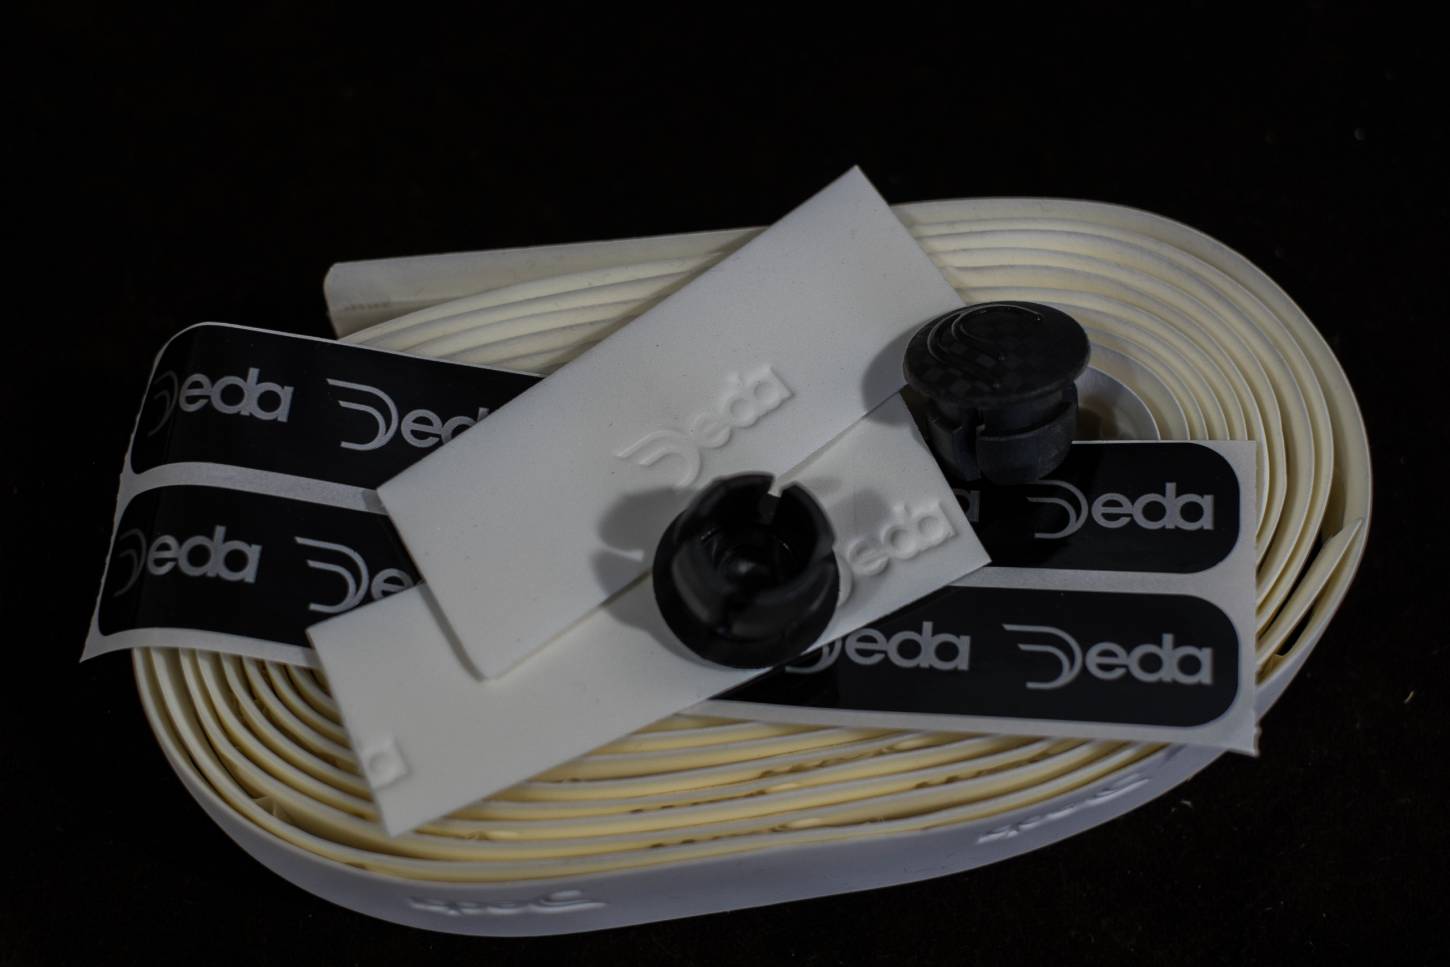 Deda Elementi - Lenkerband Bar Tape Soft Touch weiß, white